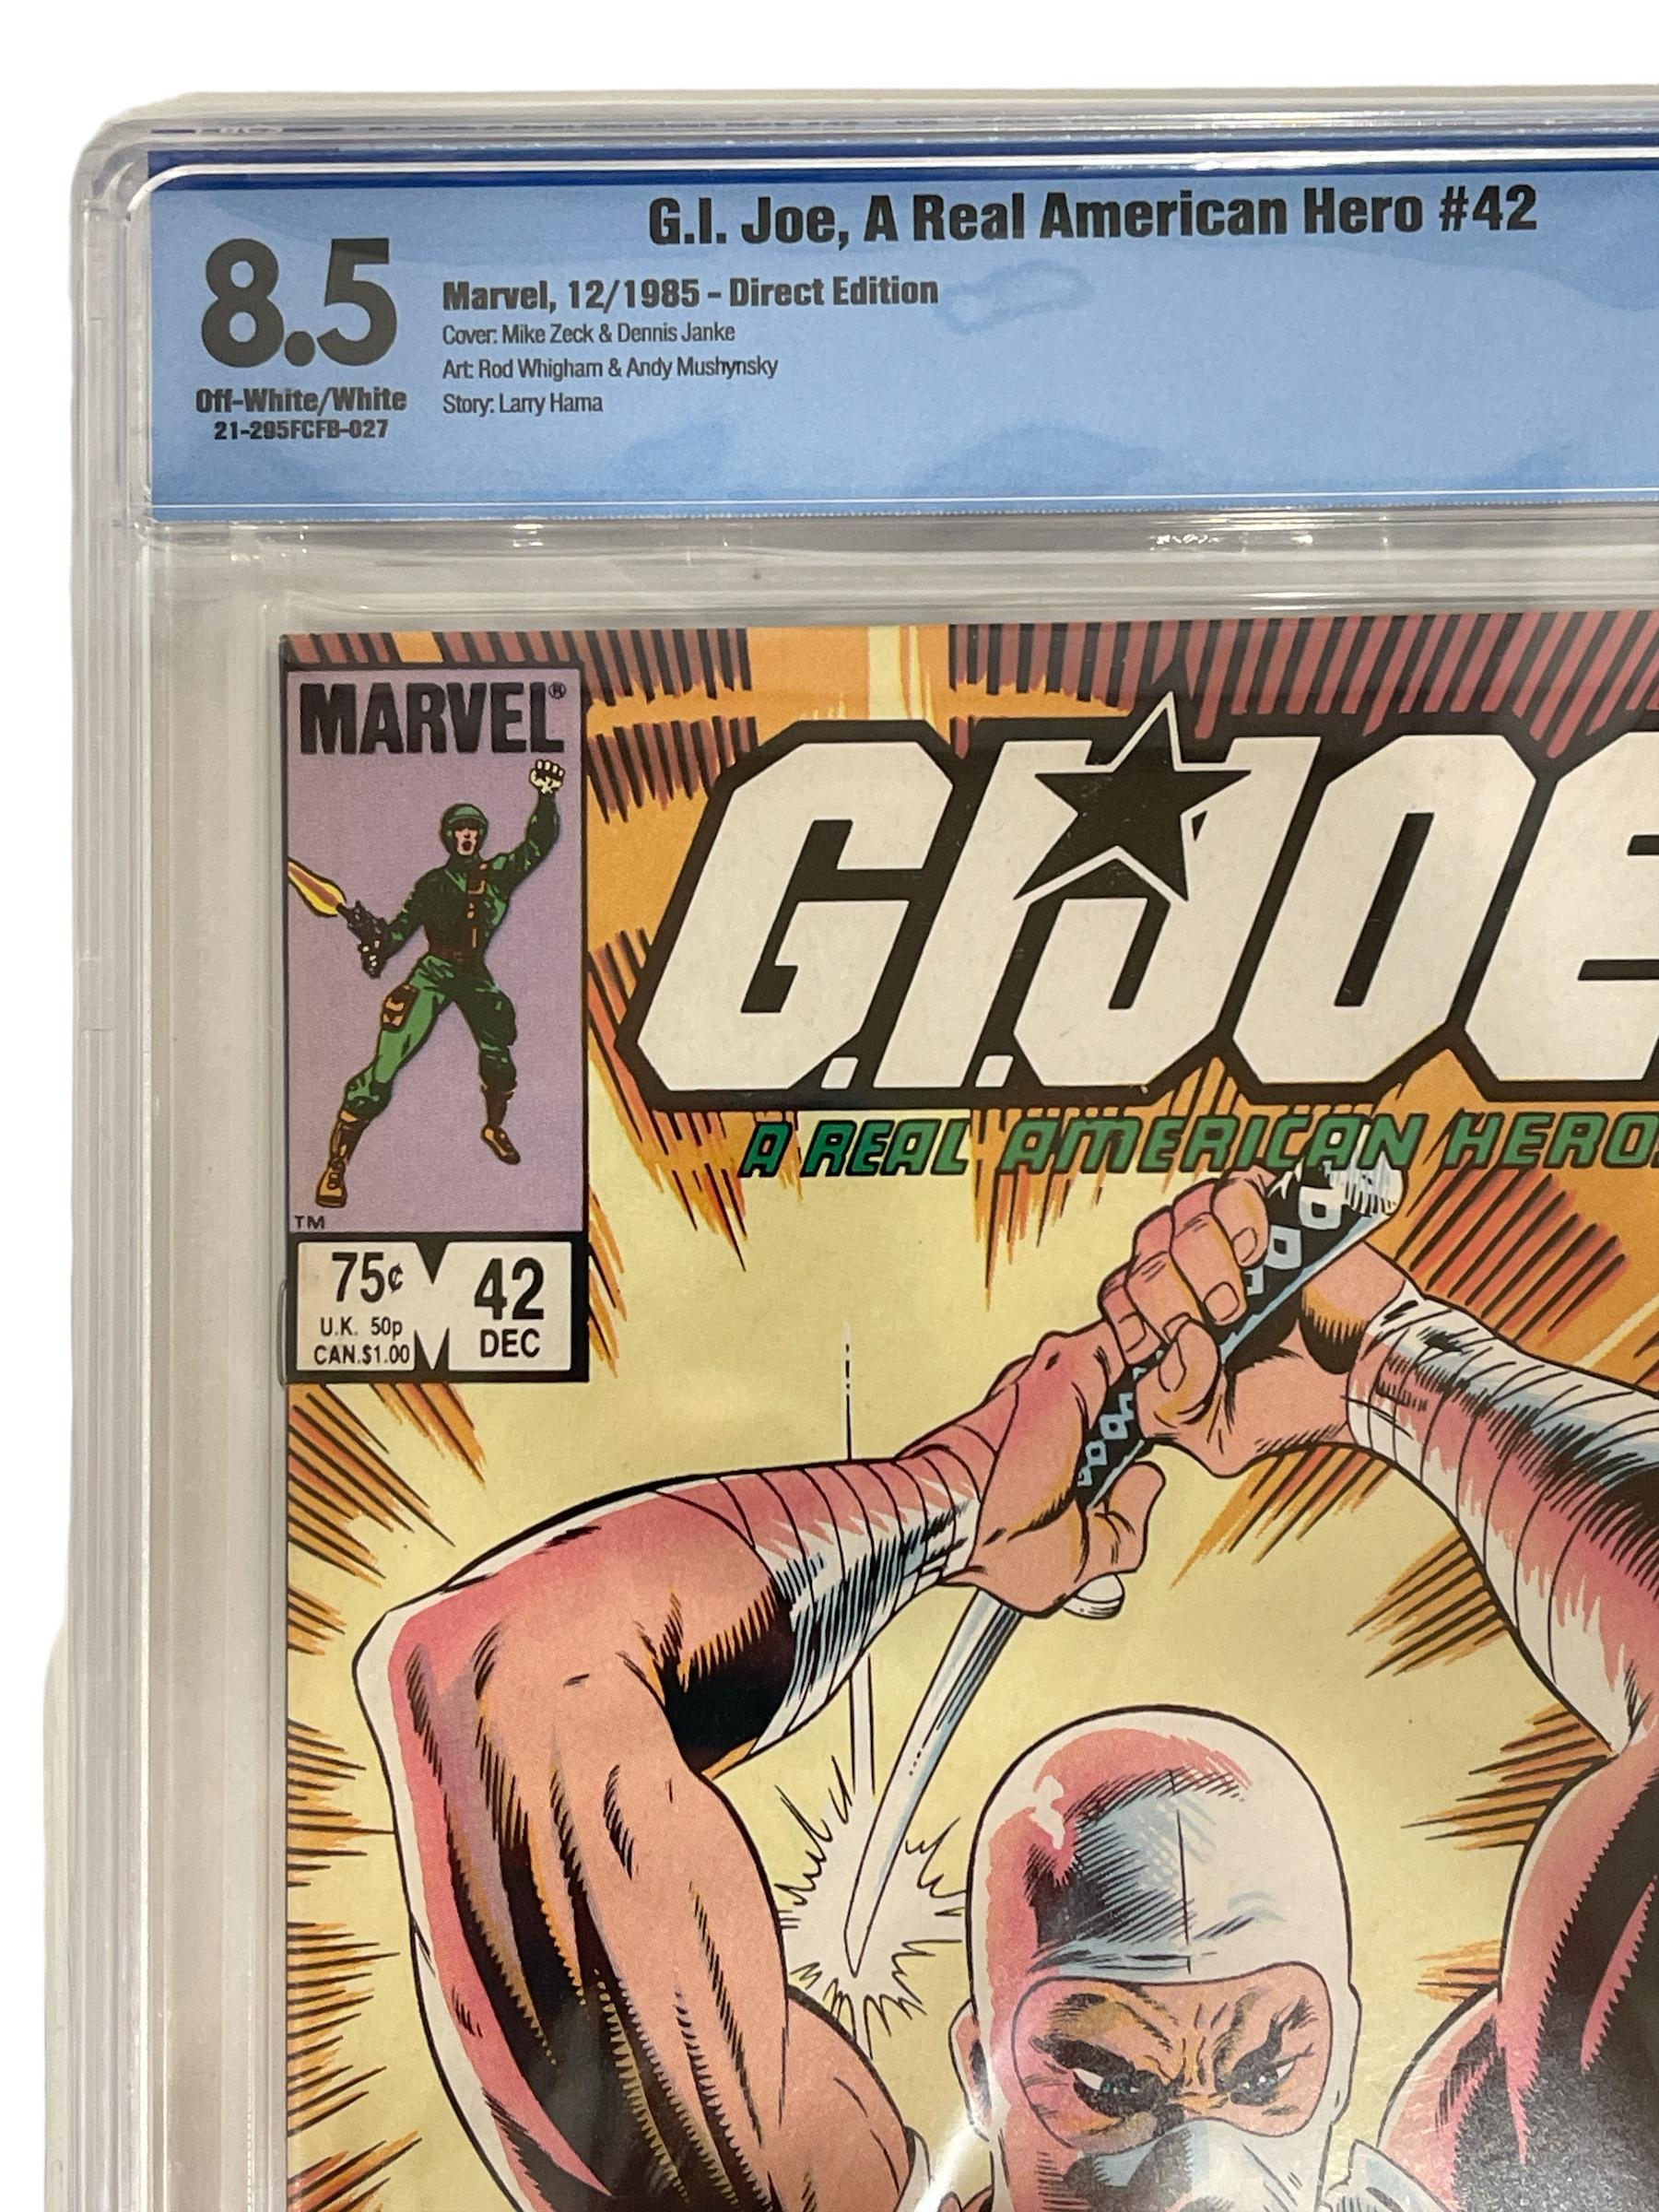 Marvel Comics - G.I. Joe, A Real American Hero No.42 - CGC 8.5